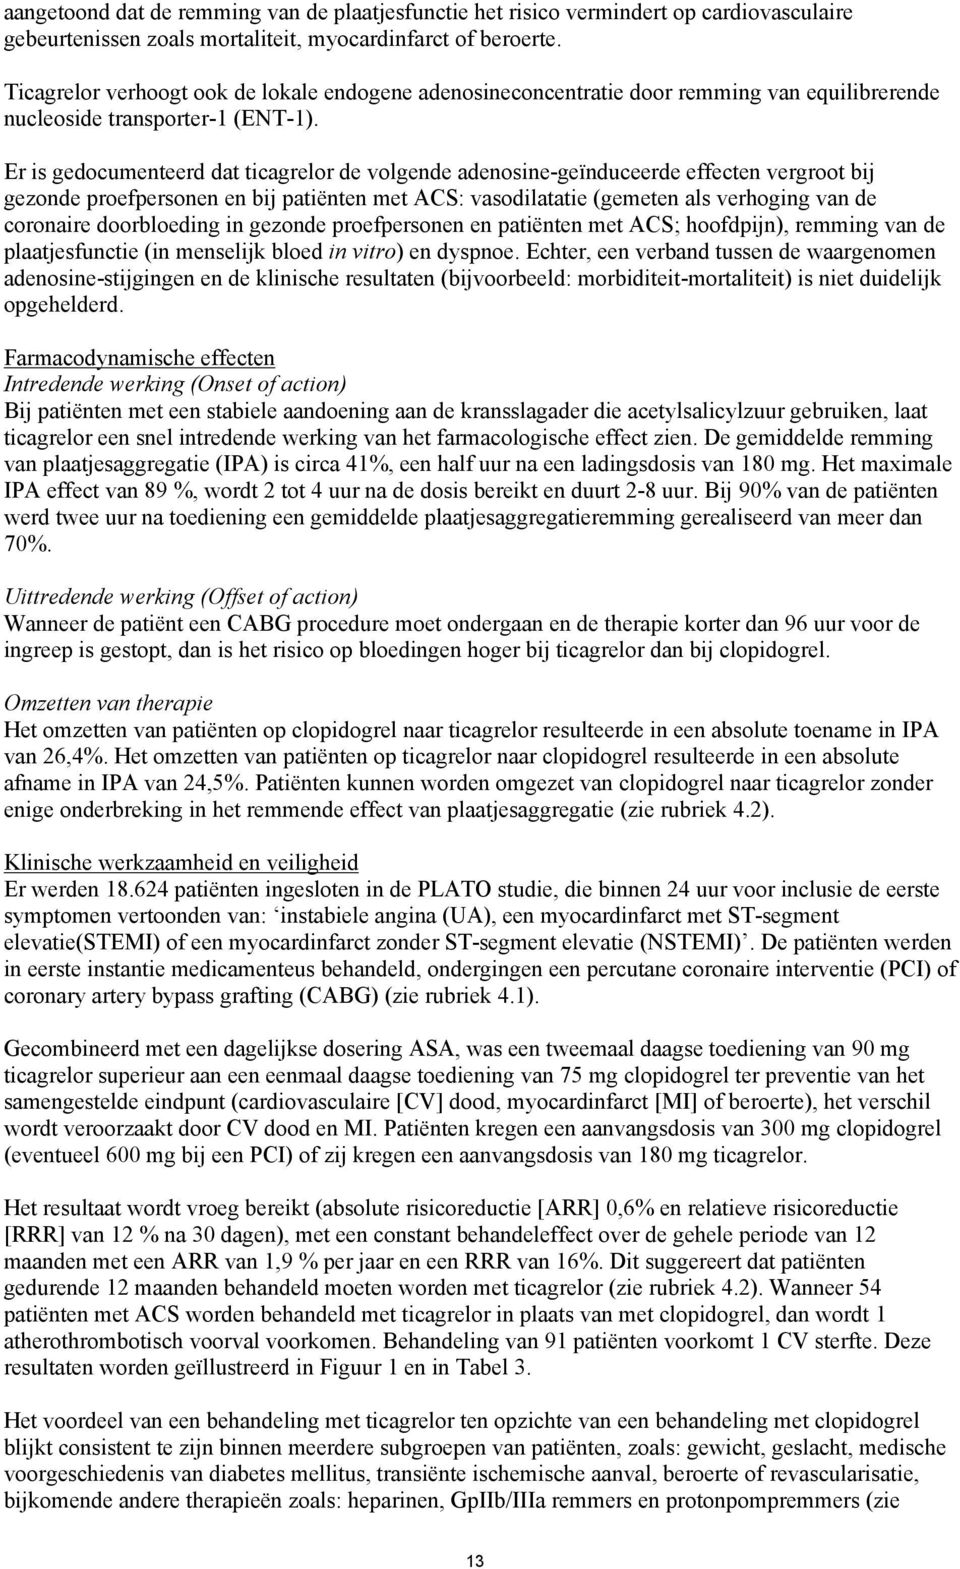 Er is gedocumenteerd dat ticagrelor de volgende adenosine-geïnduceerde effecten vergroot bij gezonde proefpersonen en bij patiënten met ACS: vasodilatatie (gemeten als verhoging van de coronaire